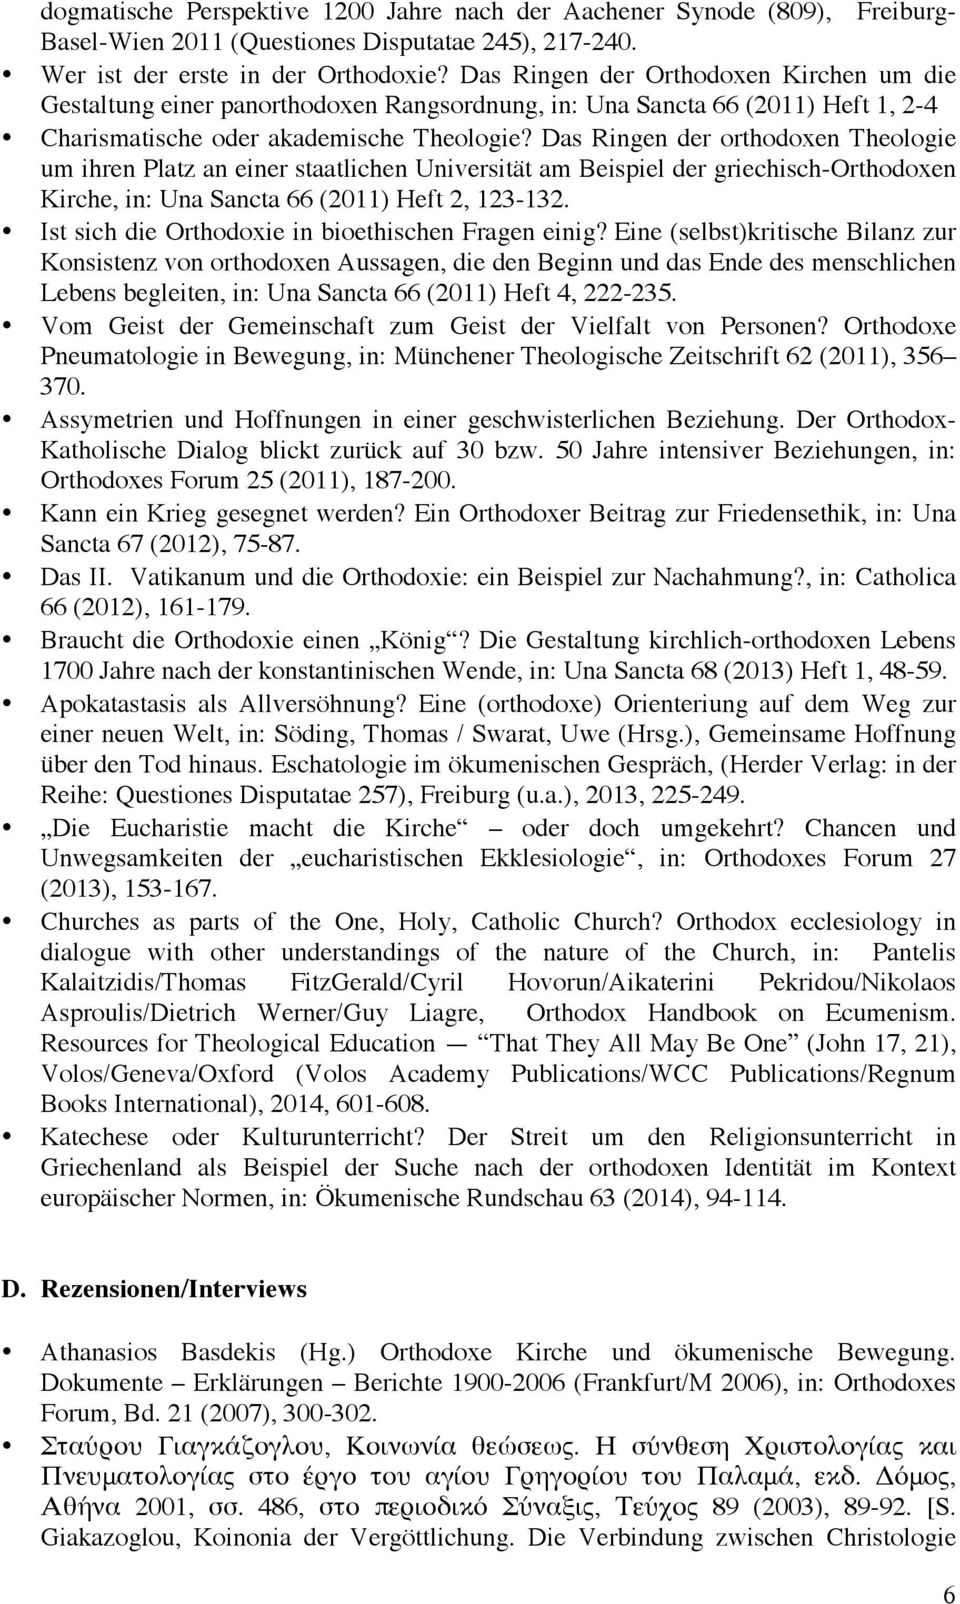 Das Ringen der orthodoxen Theologie um ihren Platz an einer staatlichen Universität am Beispiel der griechisch-orthodoxen Kirche, in: Una Sancta 66 (2011) Heft 2, 123-132.